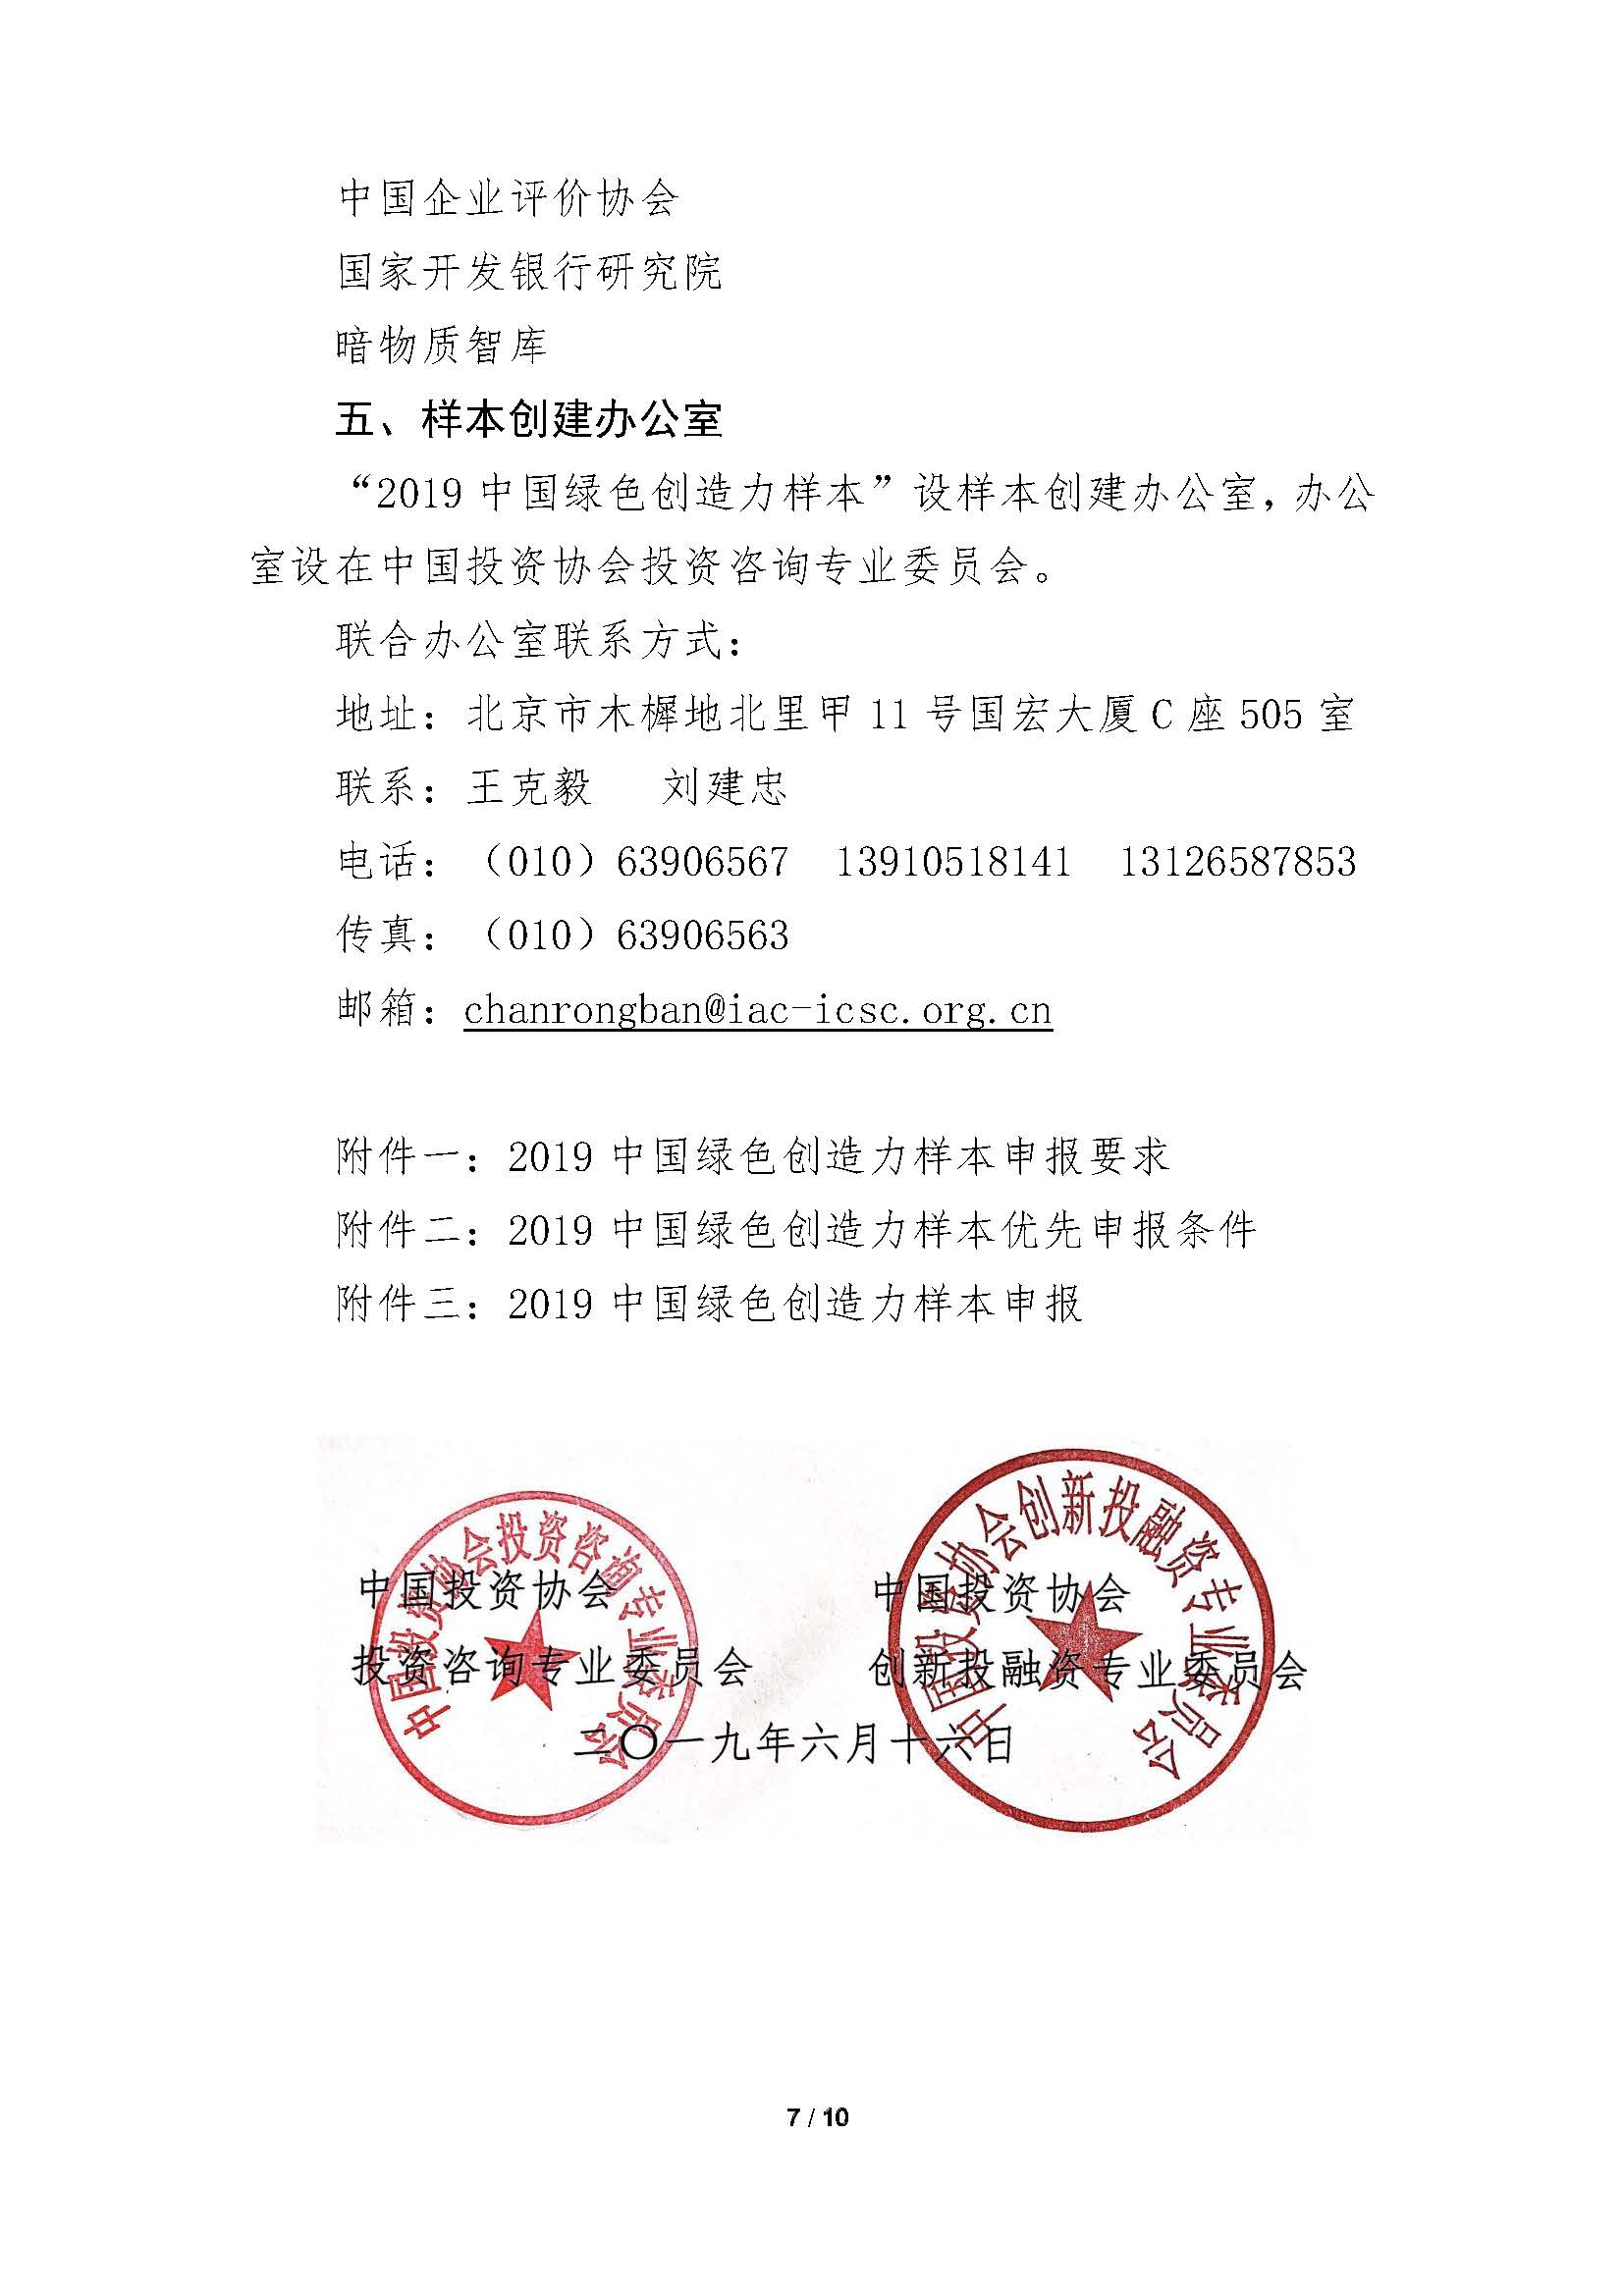 中国绿色创造力样本”的通知_页面_07.jpg